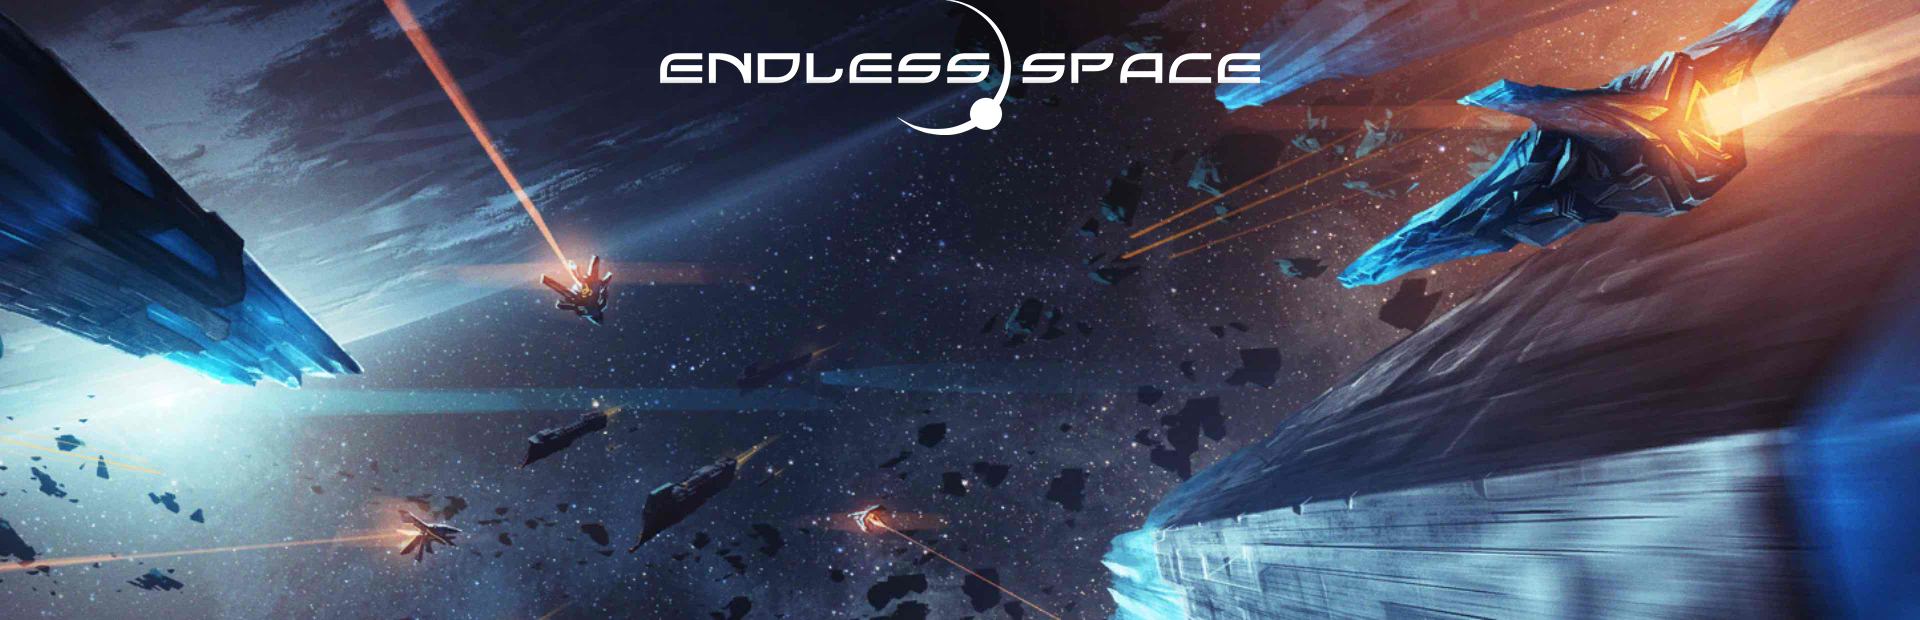 دانلود بازی ENDLESS Space برای پی سی |گیمباتو